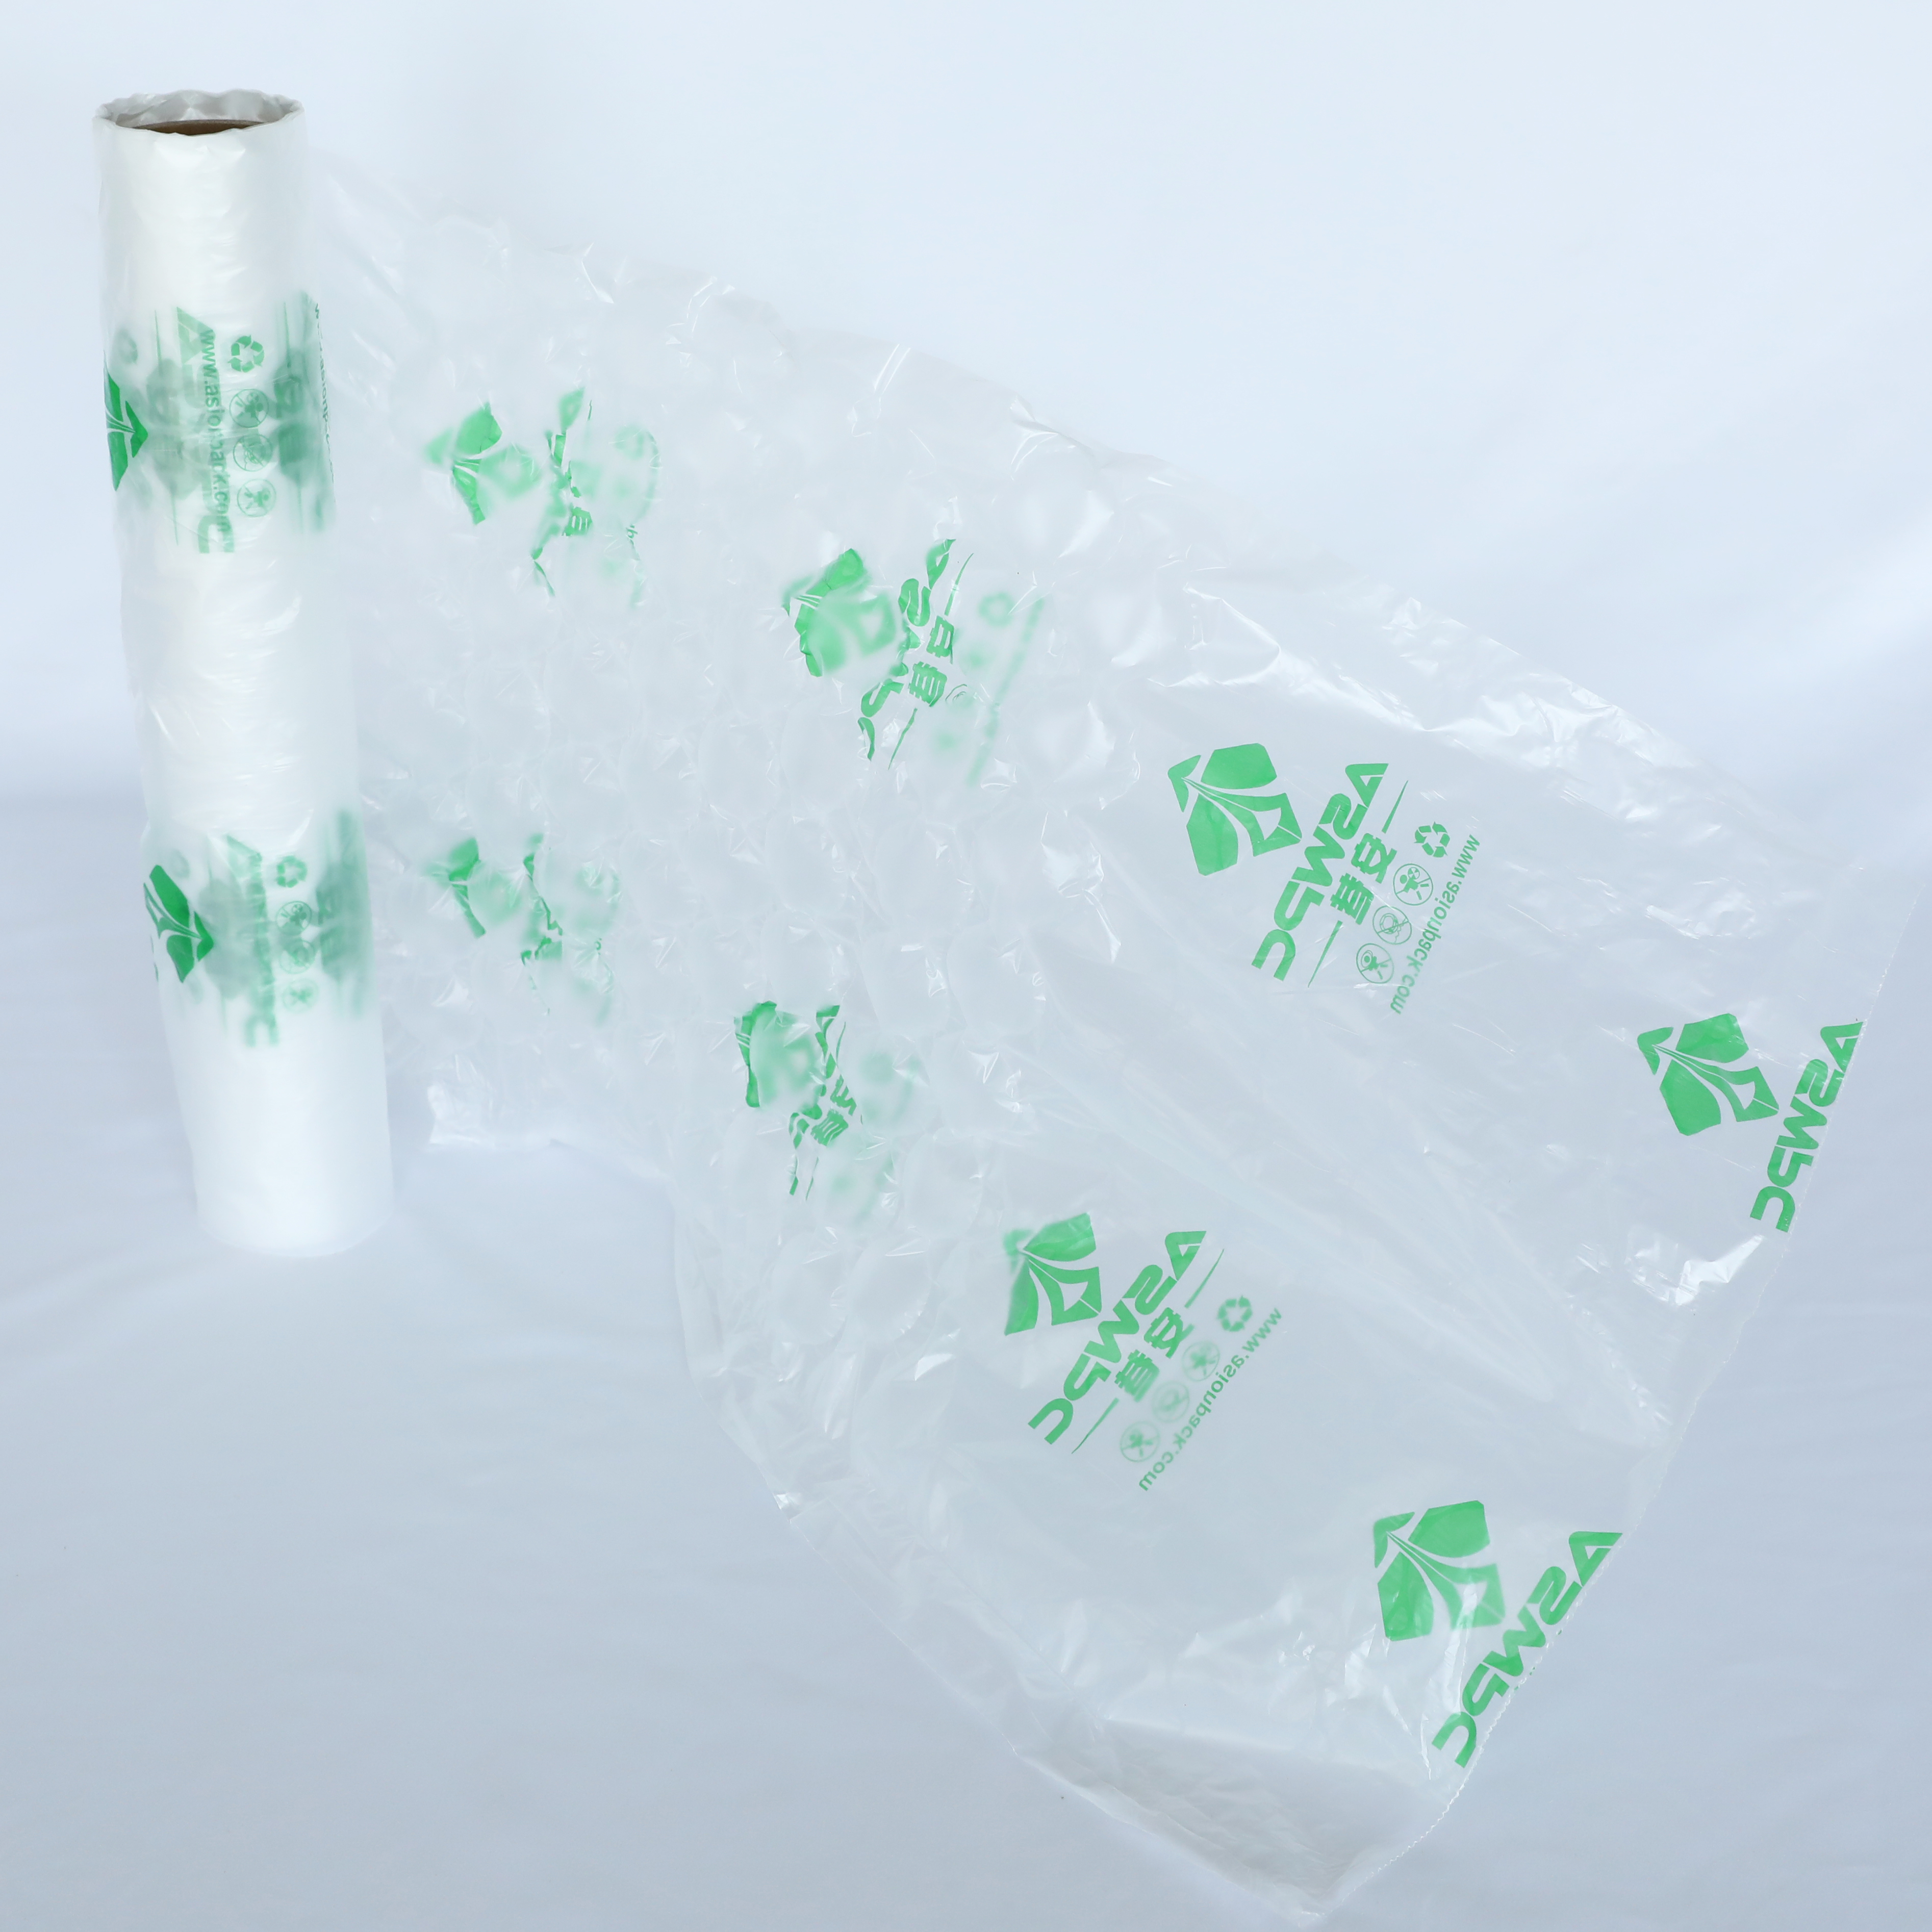 壊れやすい製品の防水エア クッション包装紙